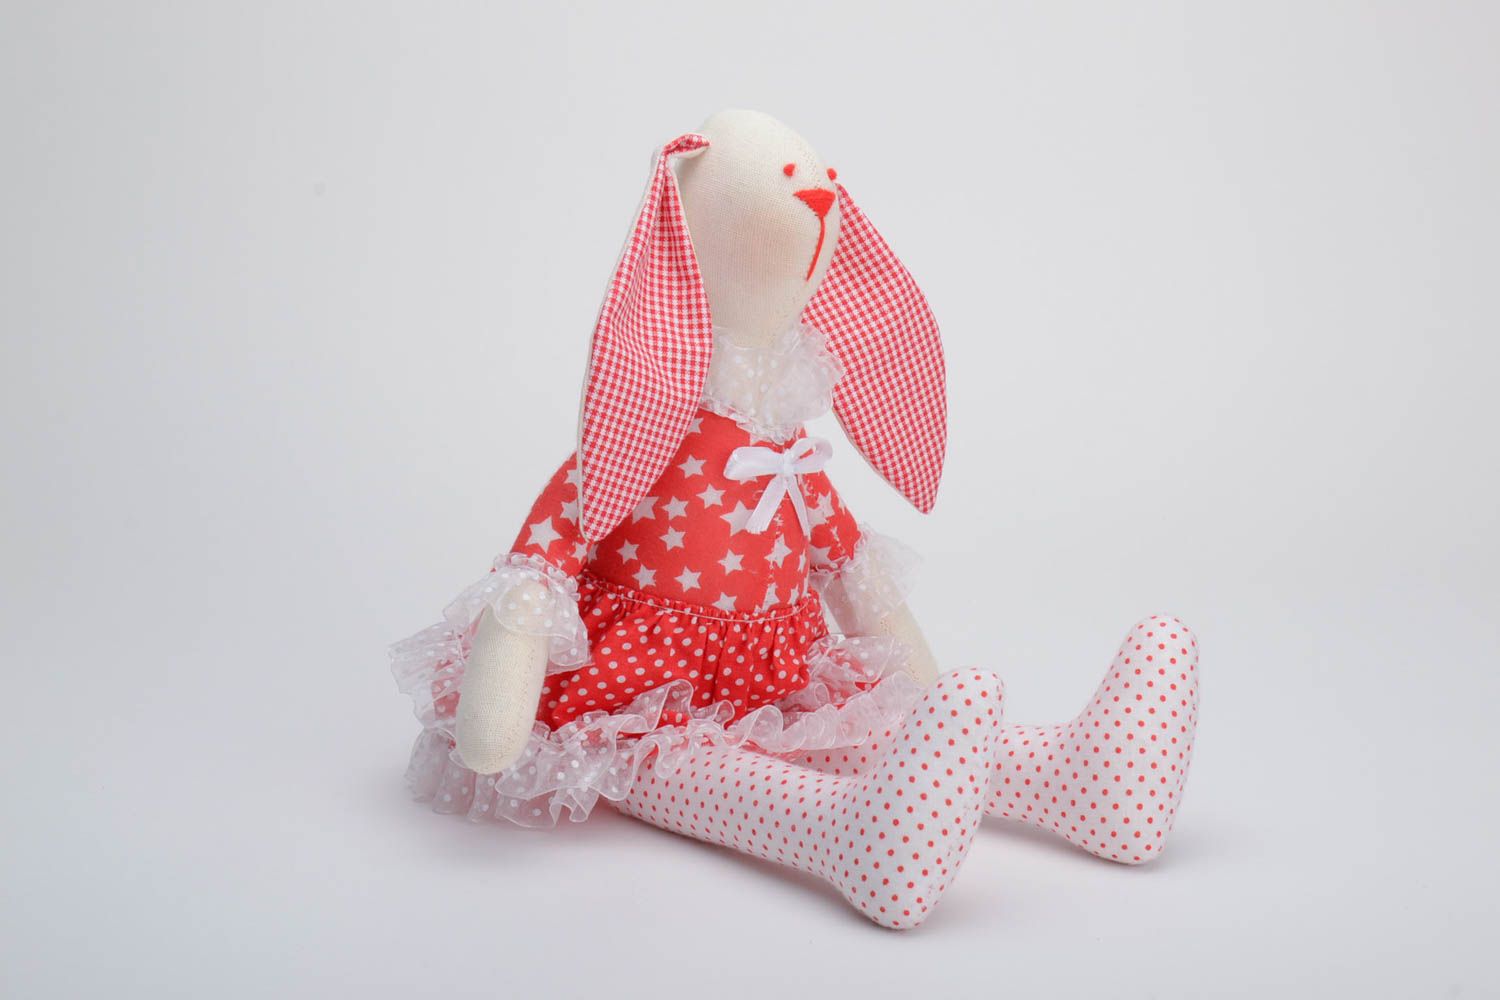 Petite peluche en tissu de coton faite main originale lapin blanc en robe rouge photo 2